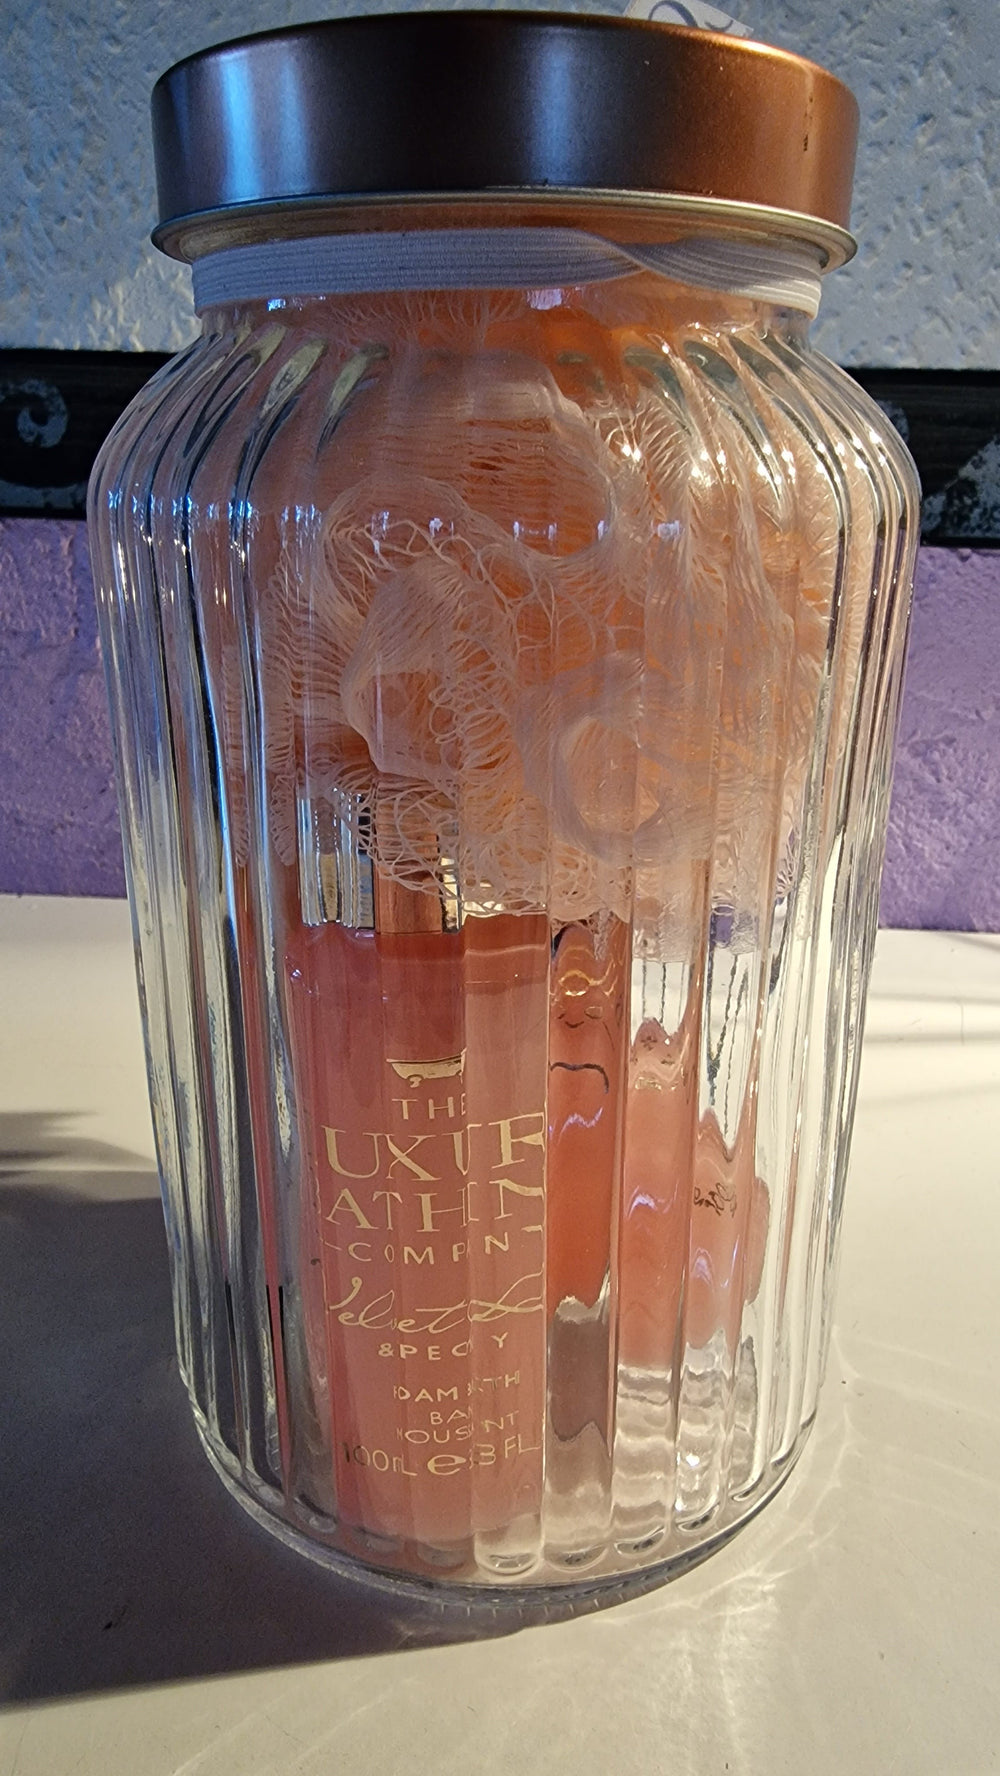 Luxury Bathing 6-teiliges Geschenk Set in dekorativem Glas mit Schleife